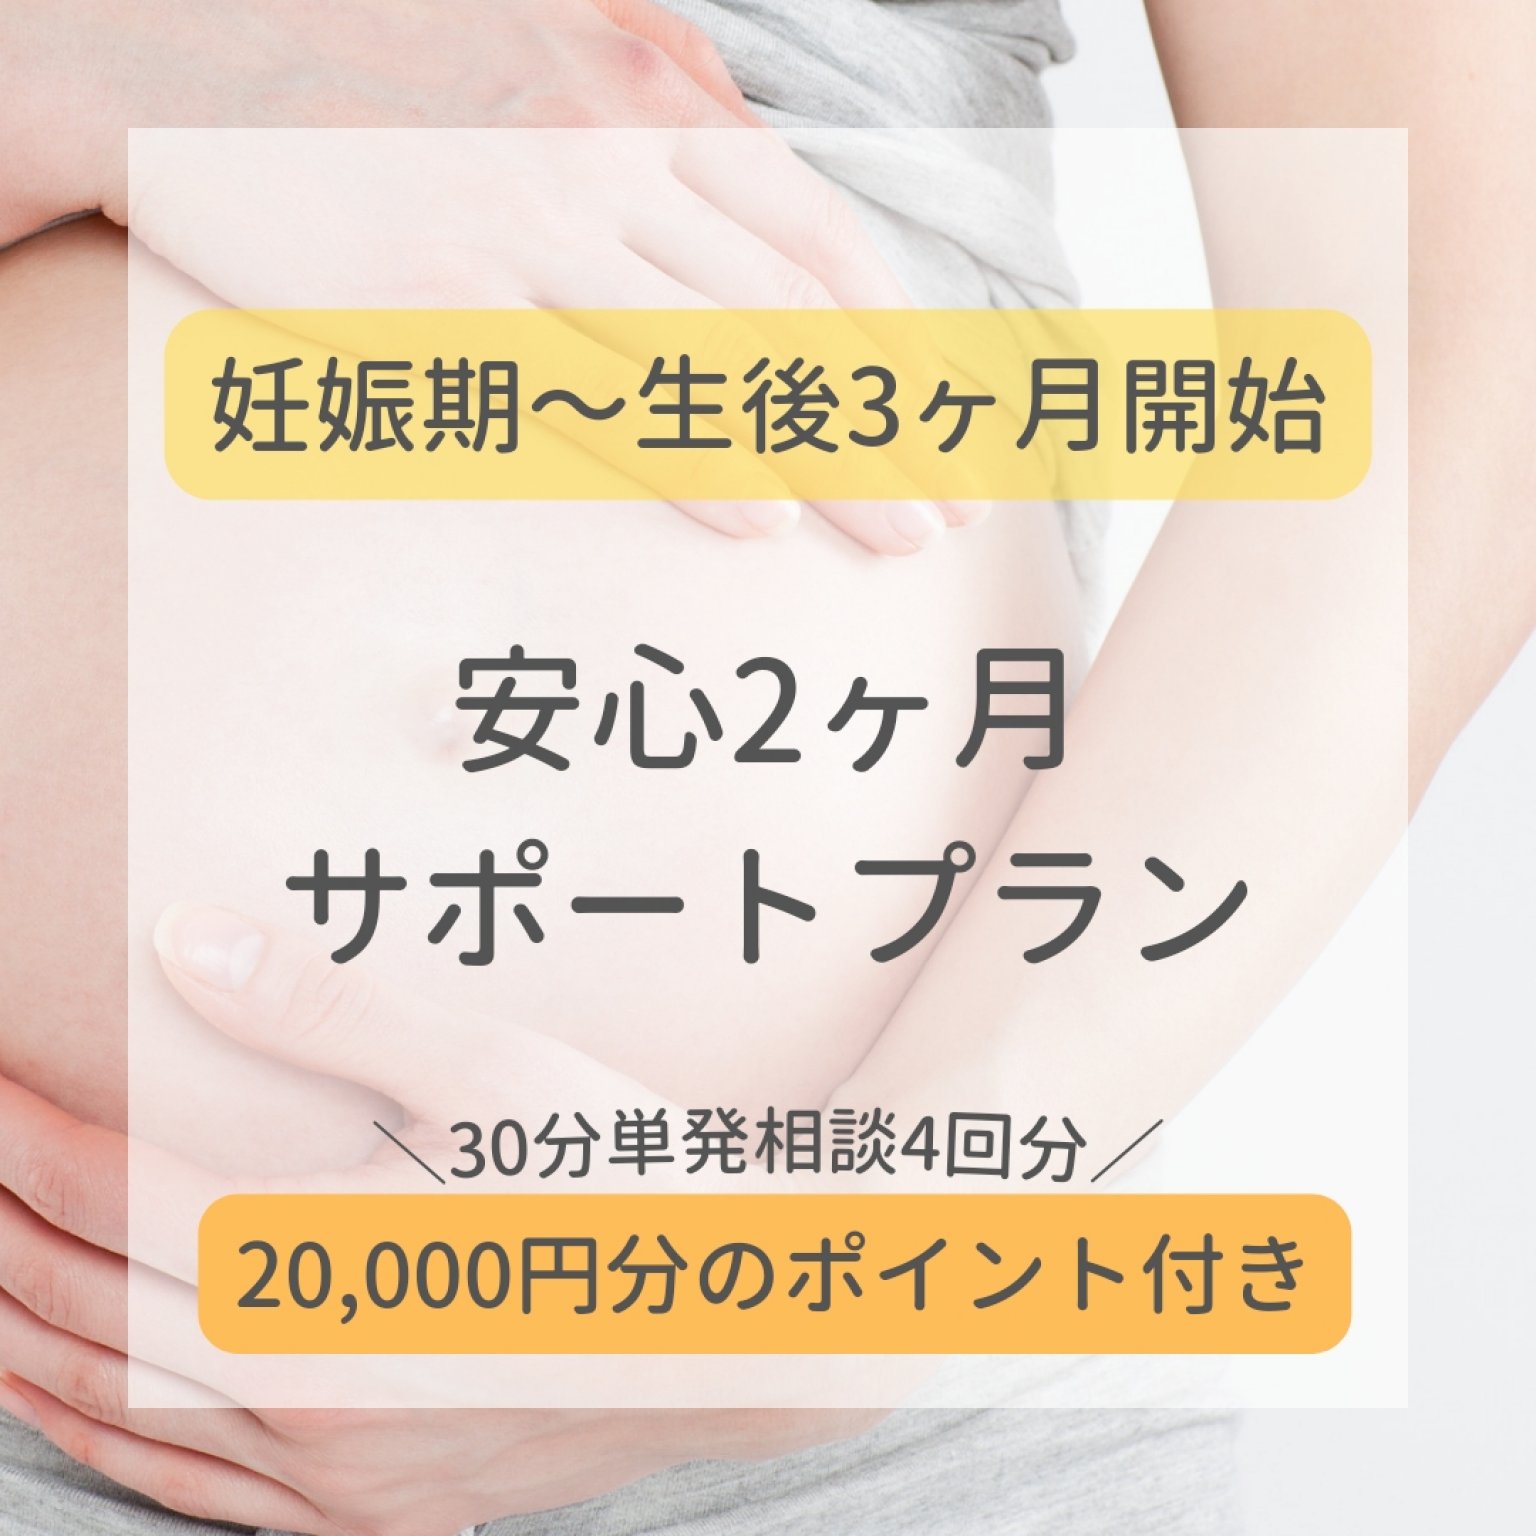 【妊娠期〜生後3ヶ月頃まで】安心サポートプラン